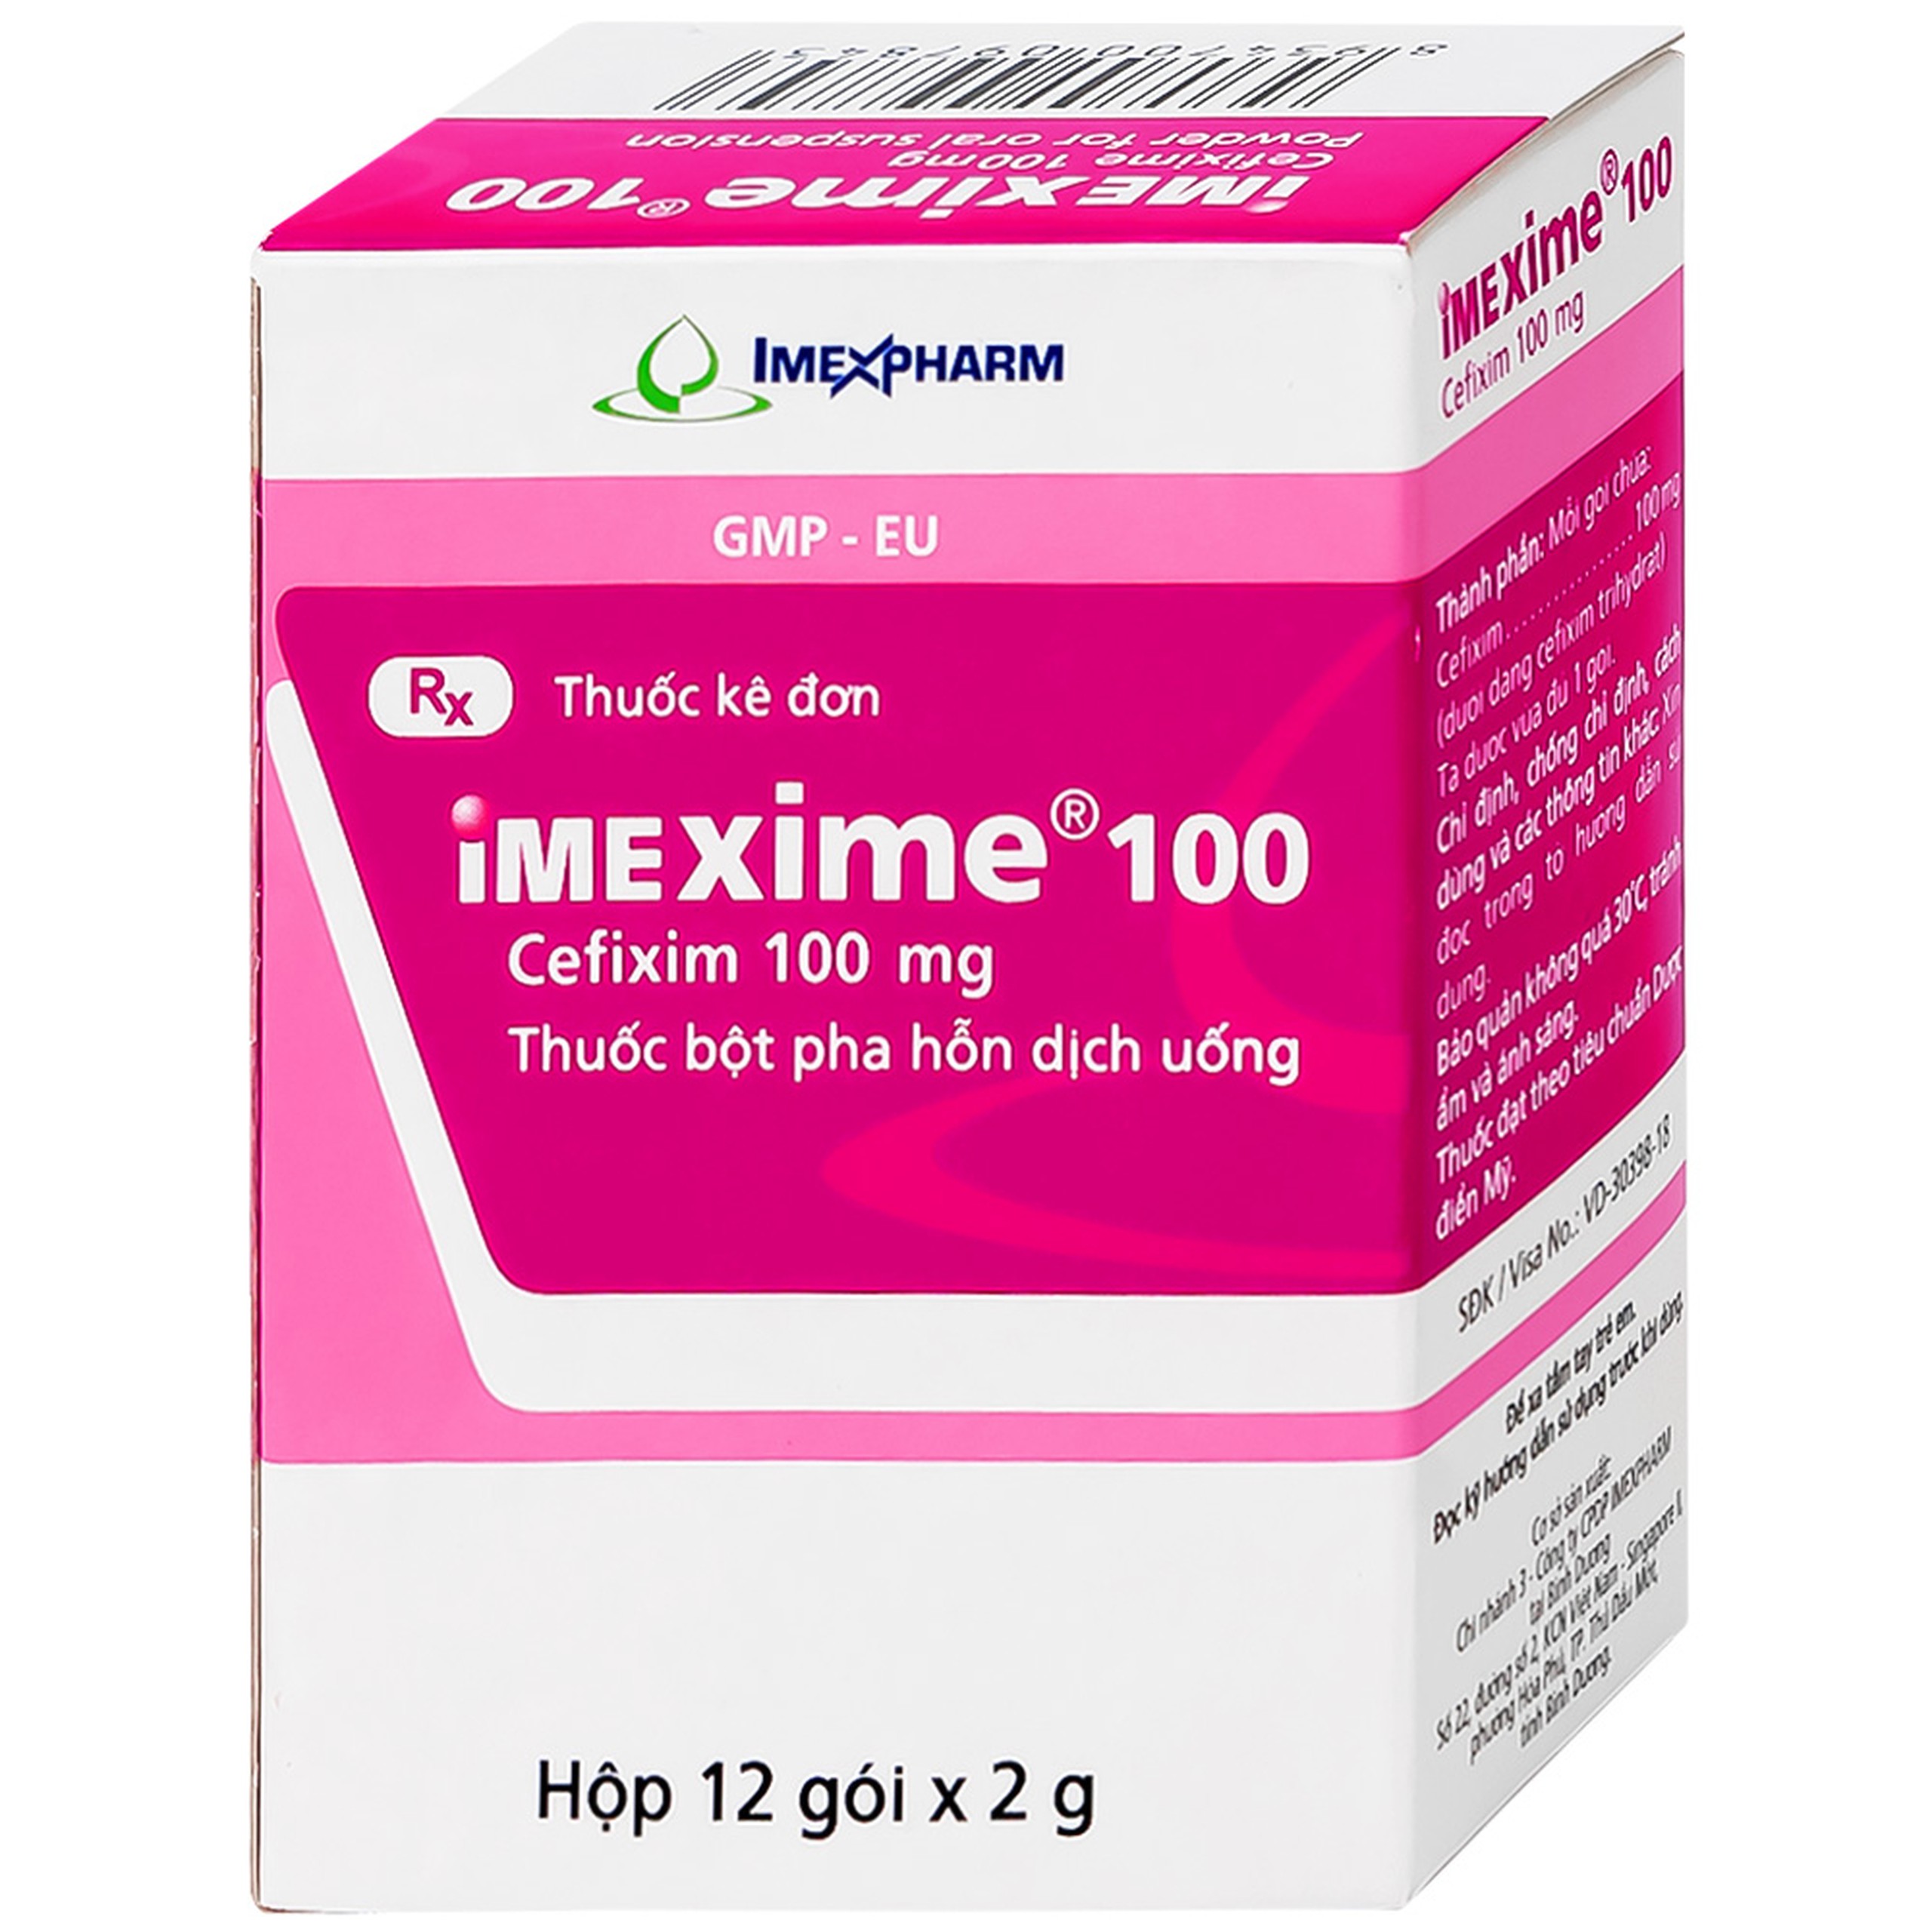 Hỗn dịch uống Imexime 100 Imexpharm điều trị nhiễm khuẩn đường tiết niệu, viêm thận - bể thận (12 gói x 2g)